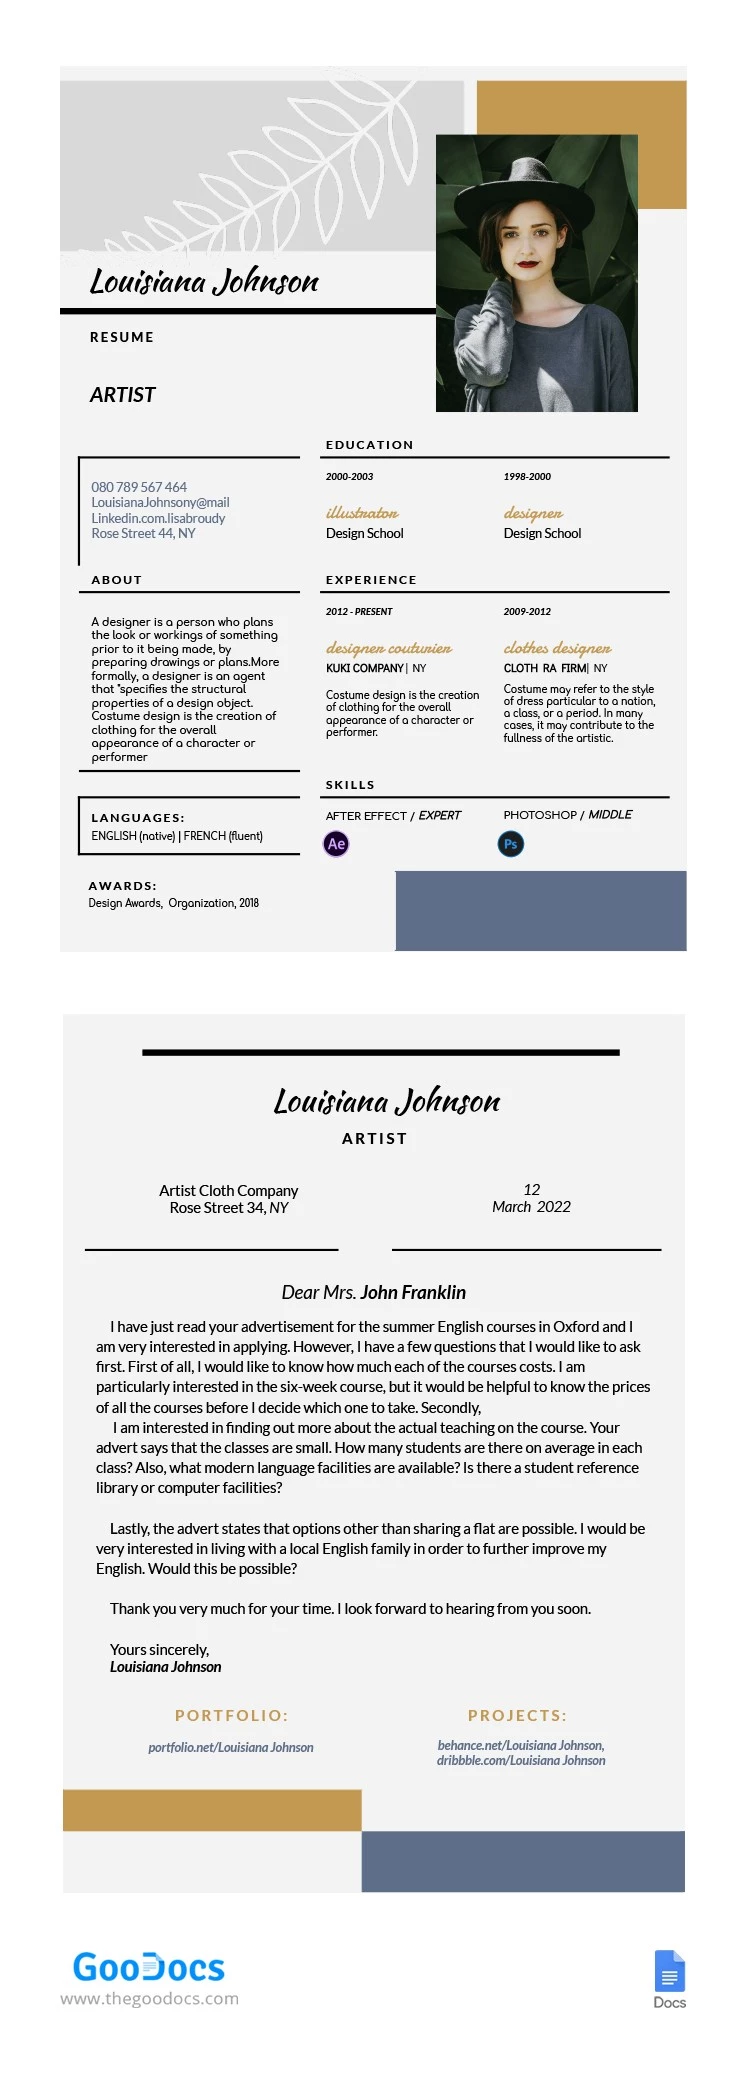 CV del artista - free Google Docs Template - 10062161